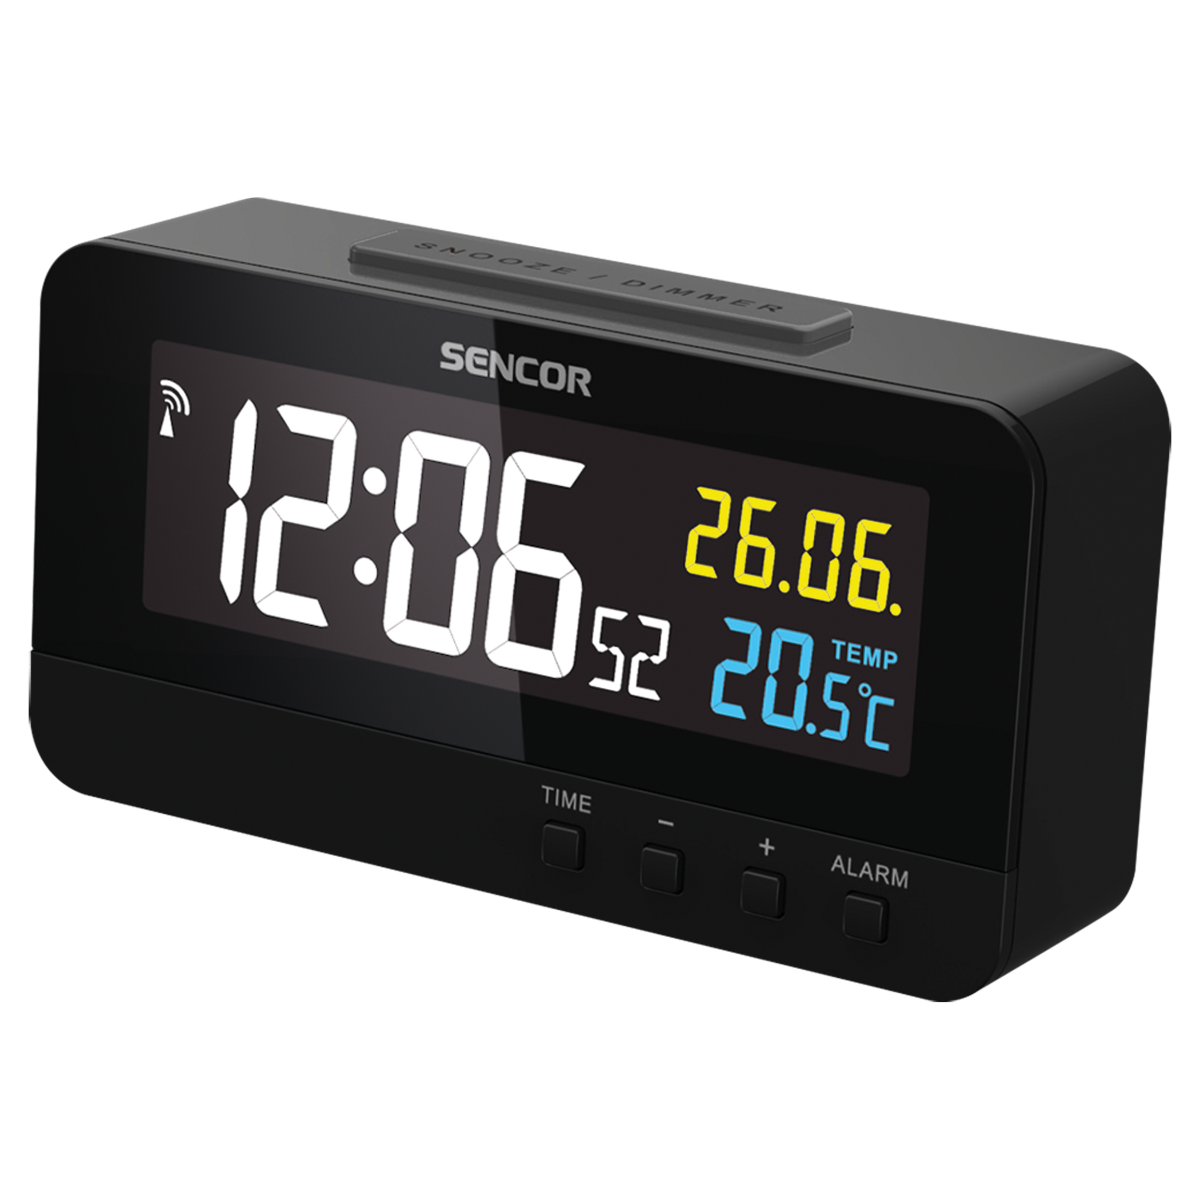 Ceas digital cu alarma SDC 4800B Sencor, Ecran color 8.6 cm, Afisarea temperaturii interioare, Calendar